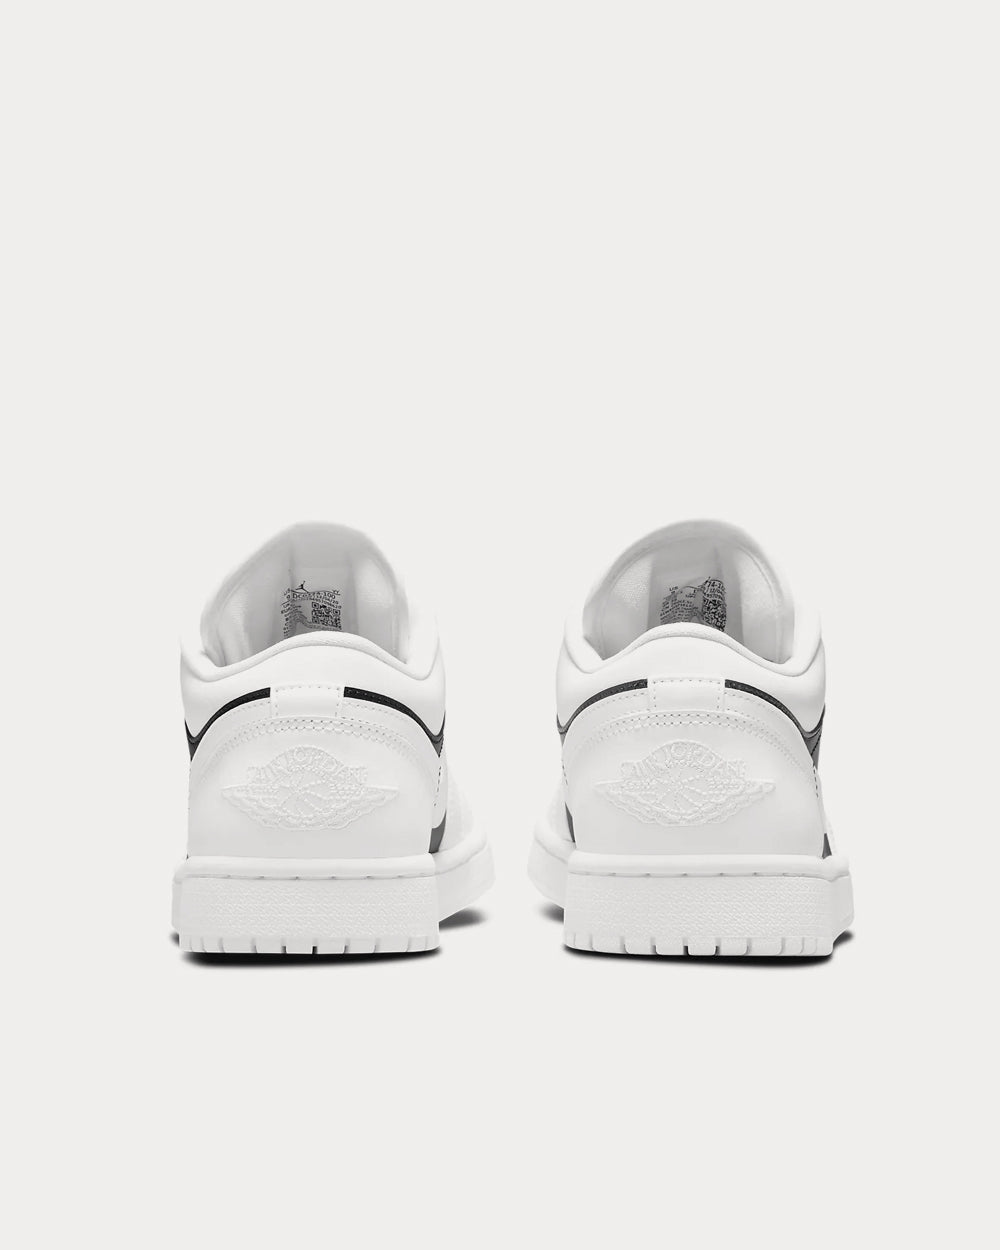 Jordan - Air Jordan 1 White / Black / White Low Top Sneakers